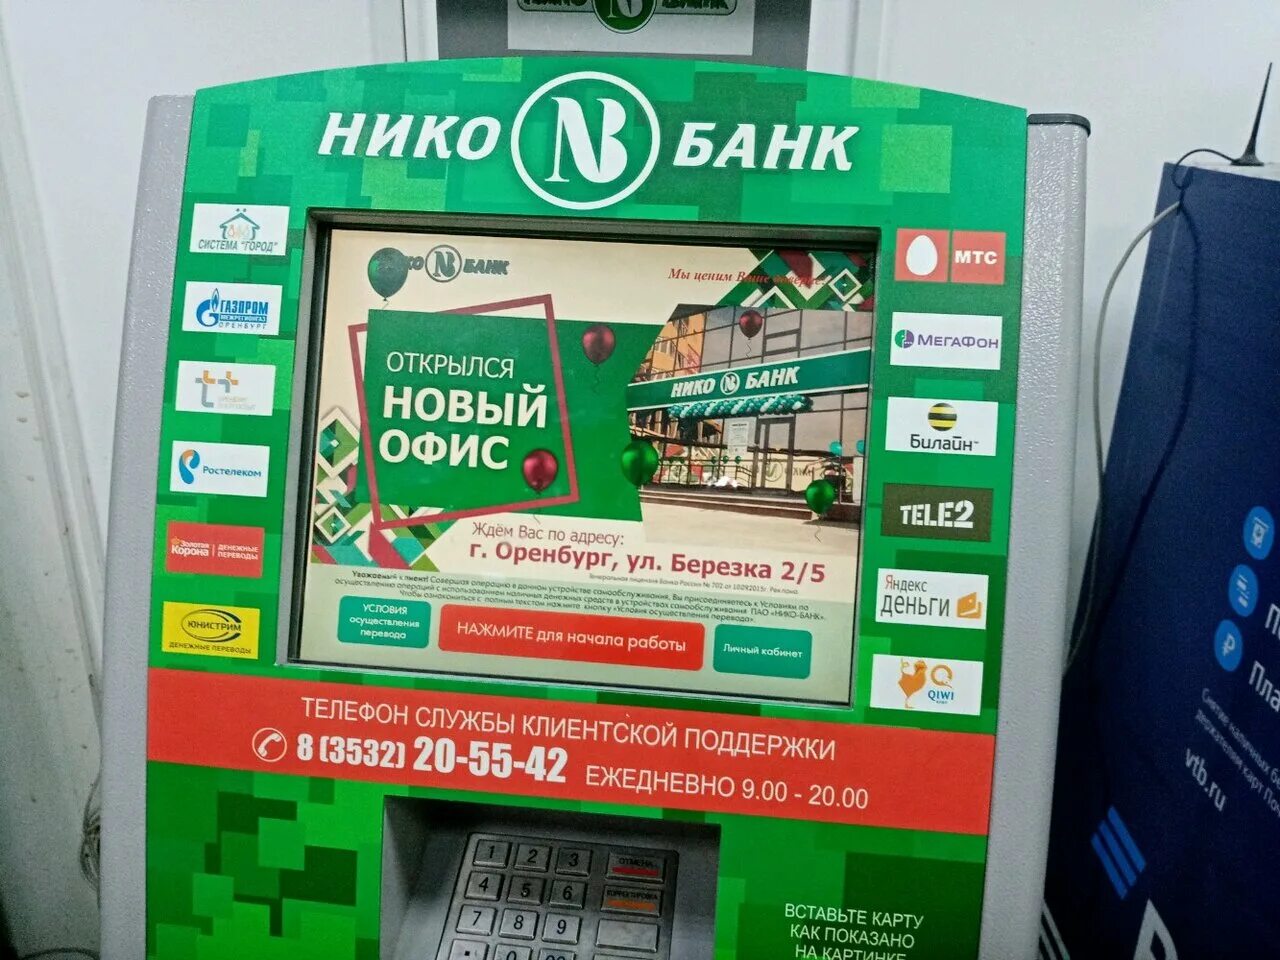 Оренбург банк бузулук. Нико банк. Нико банк Оренбург. Нико банк логотип.